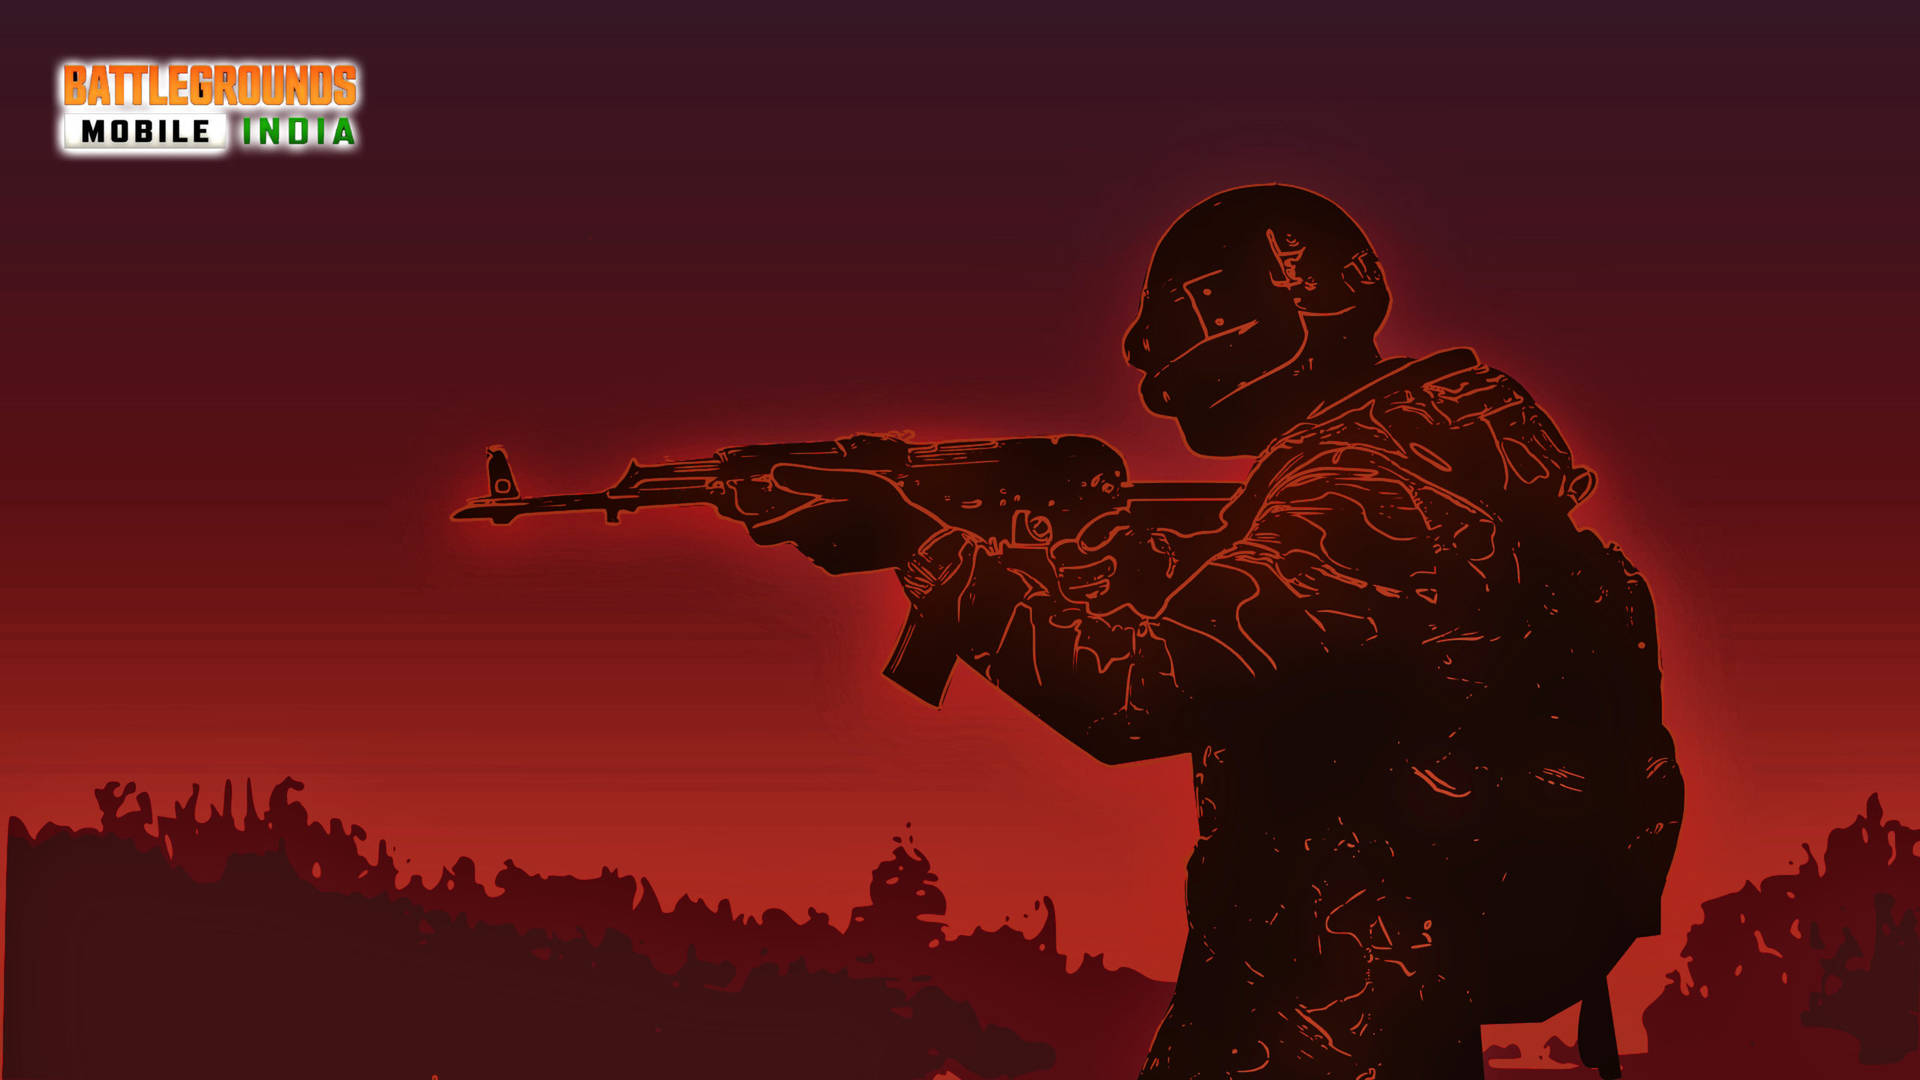 Battleground India Monochrome Red Soldier Background